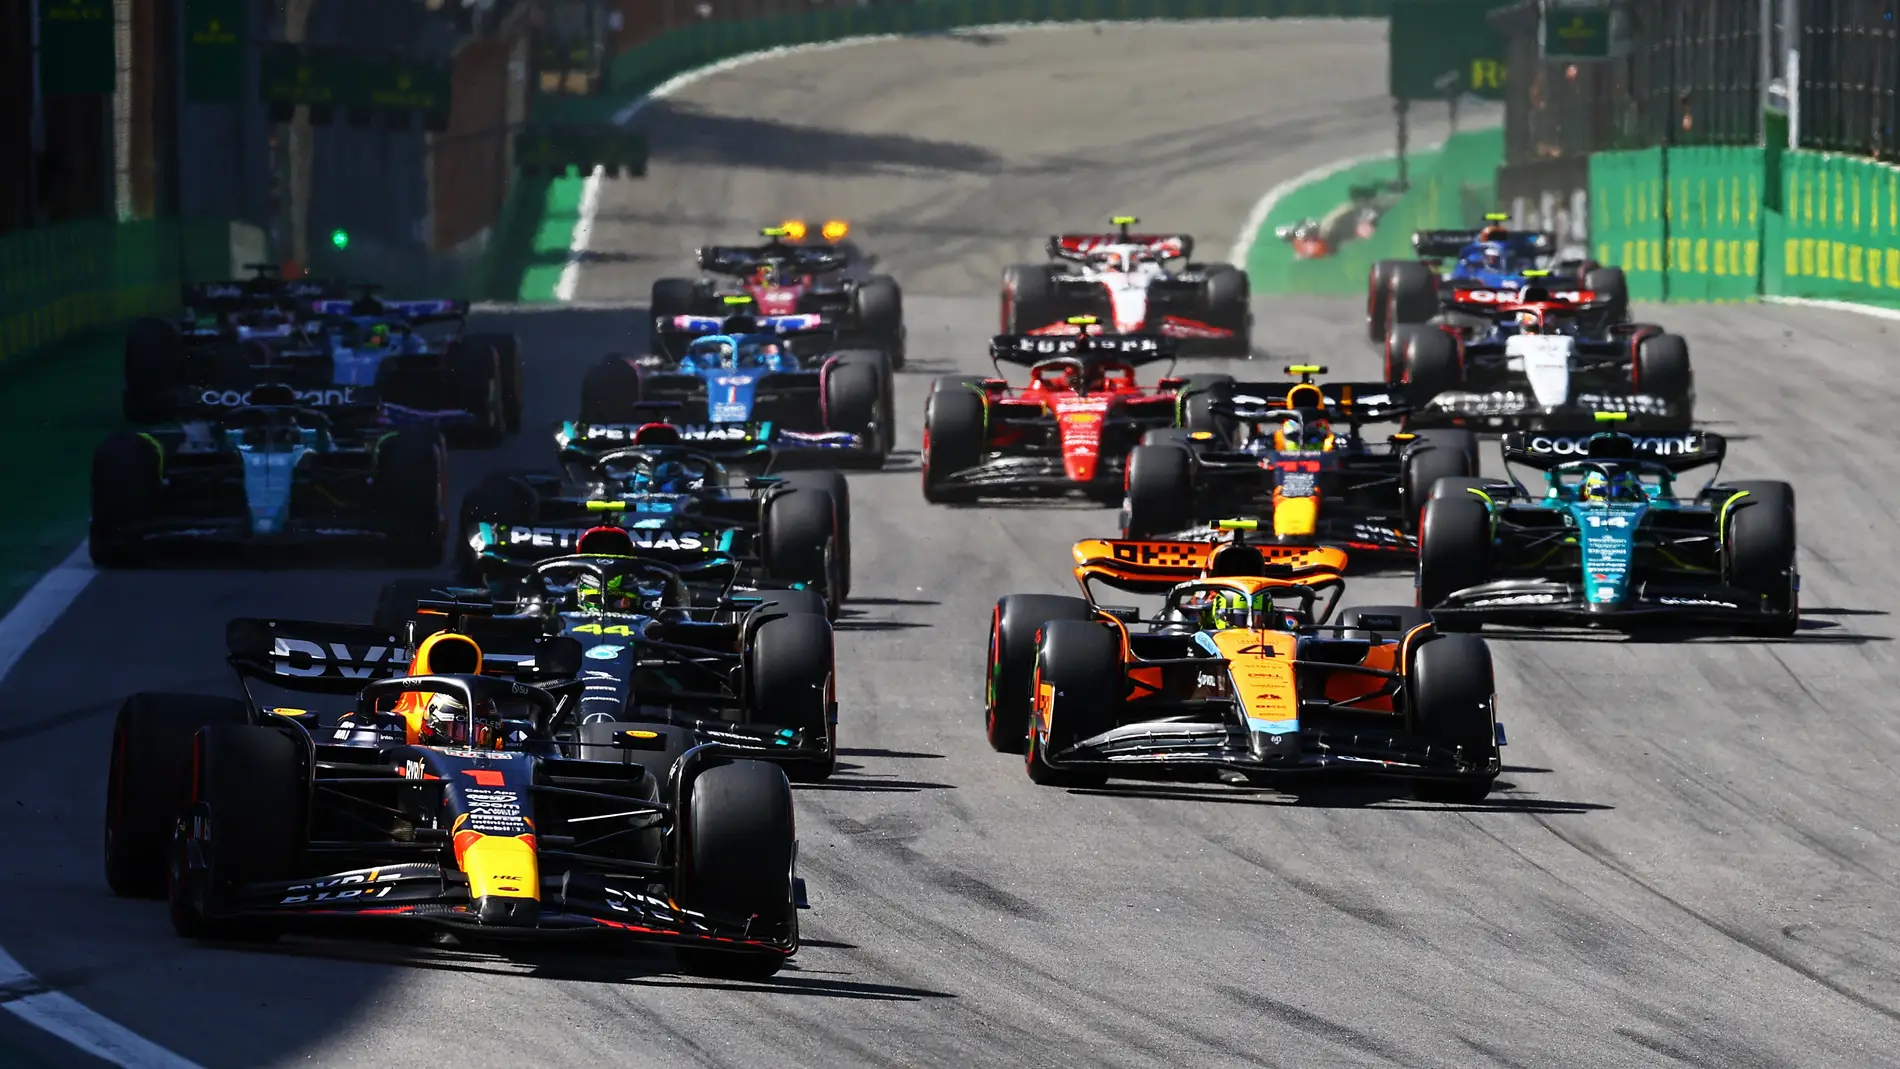 Más acción en la Fórmula 1 gracias a los nuevos cambios reglamentarios